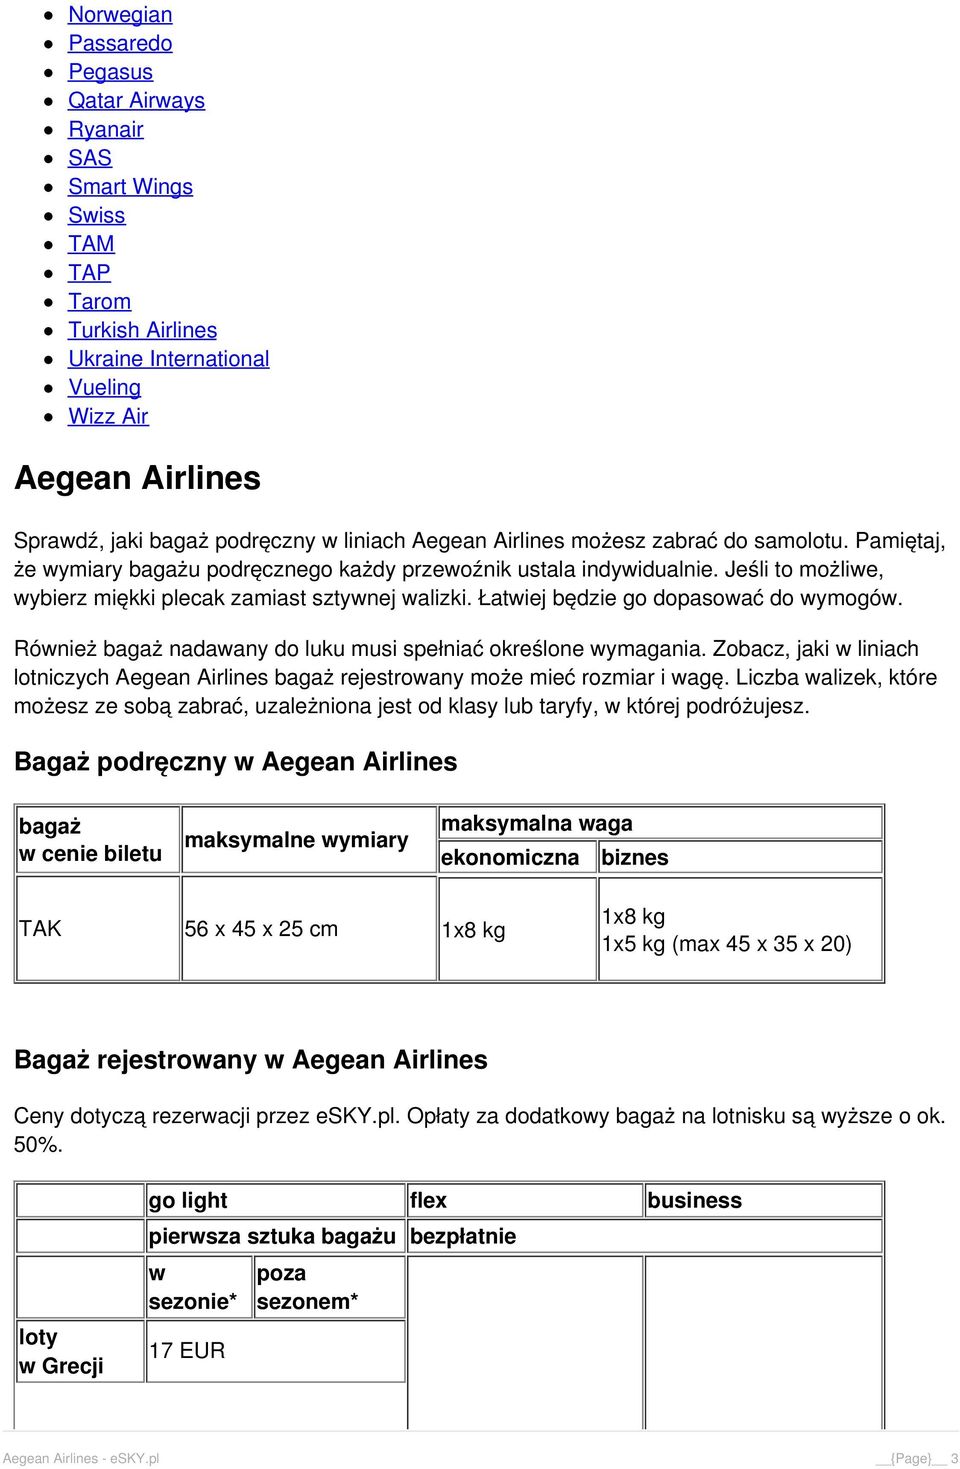 Bagaż: Wymiary i waga - Aegean Airlines - PDF Darmowe pobieranie